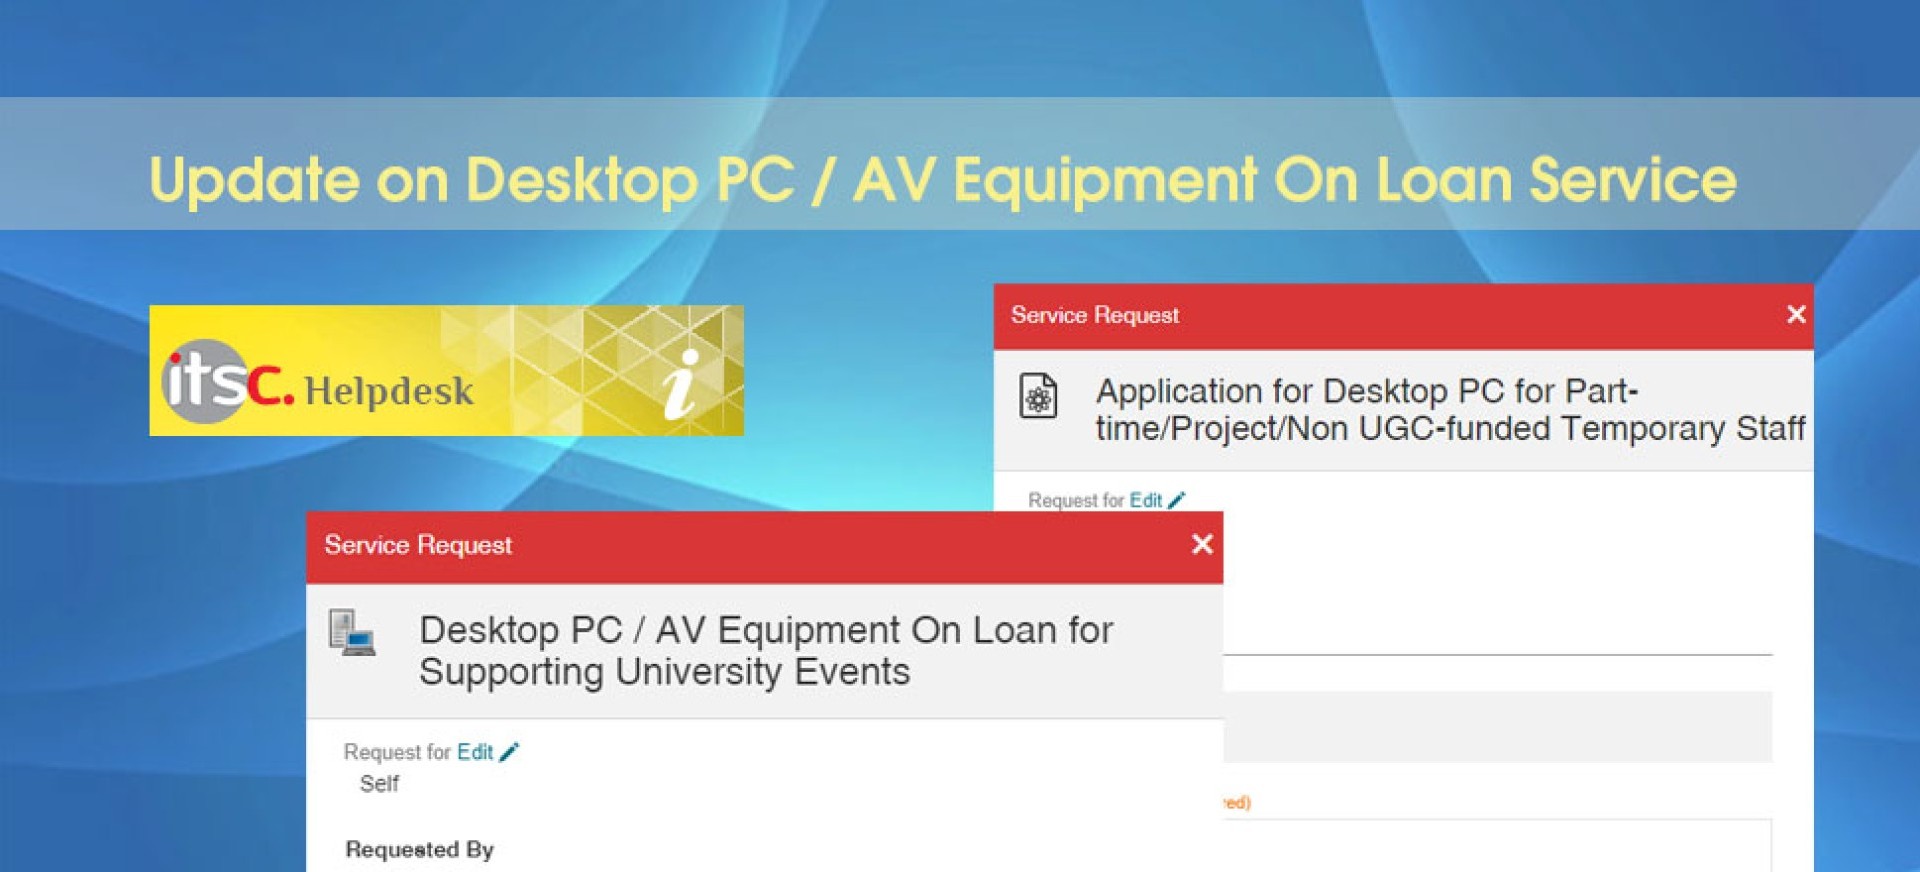 Update on Desktop PC / AV Equipment On Loan Service